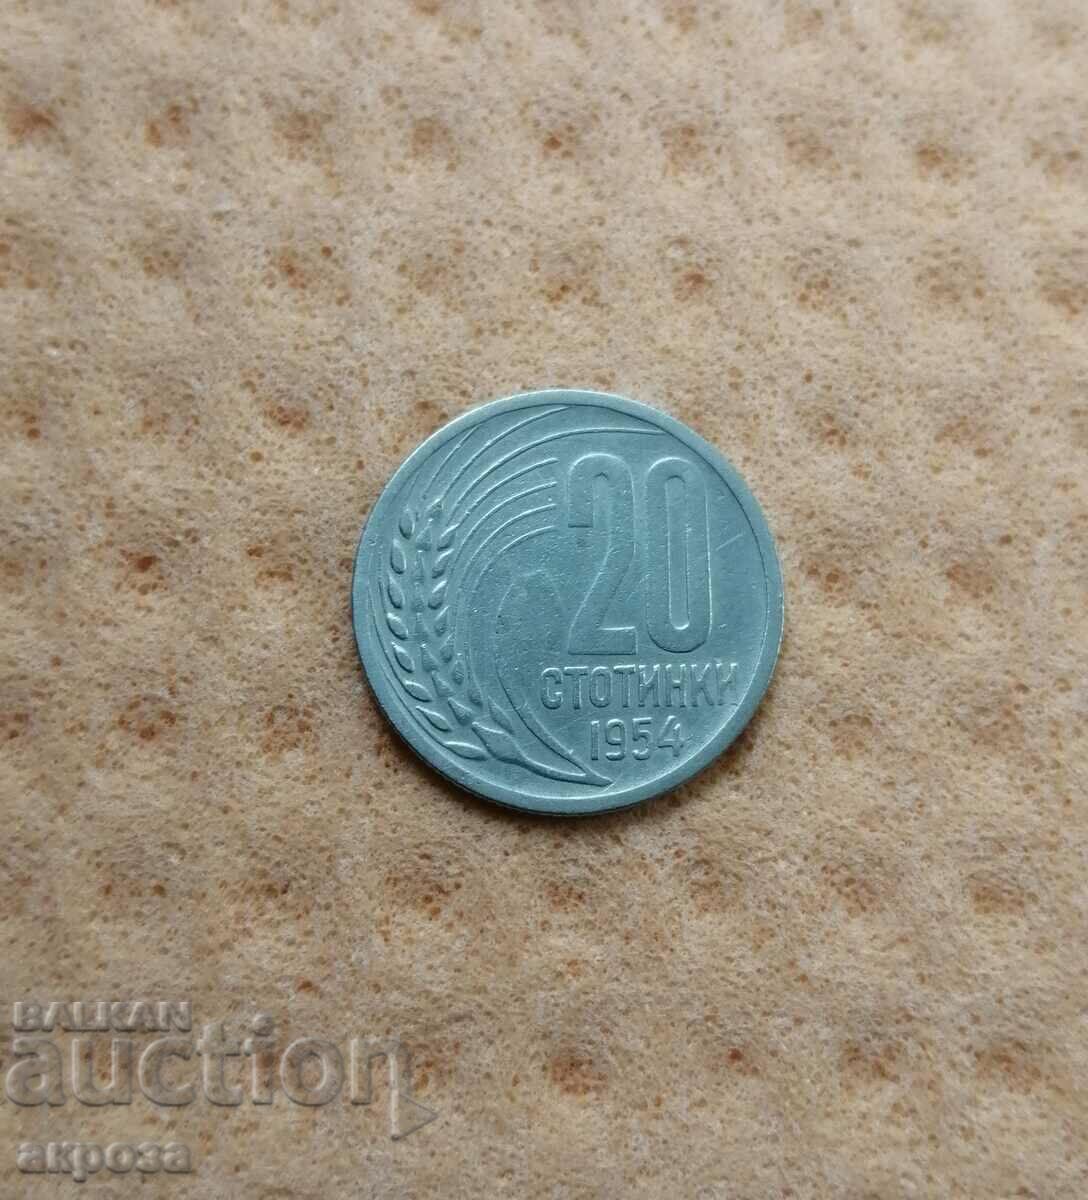 20 σεντς 1954